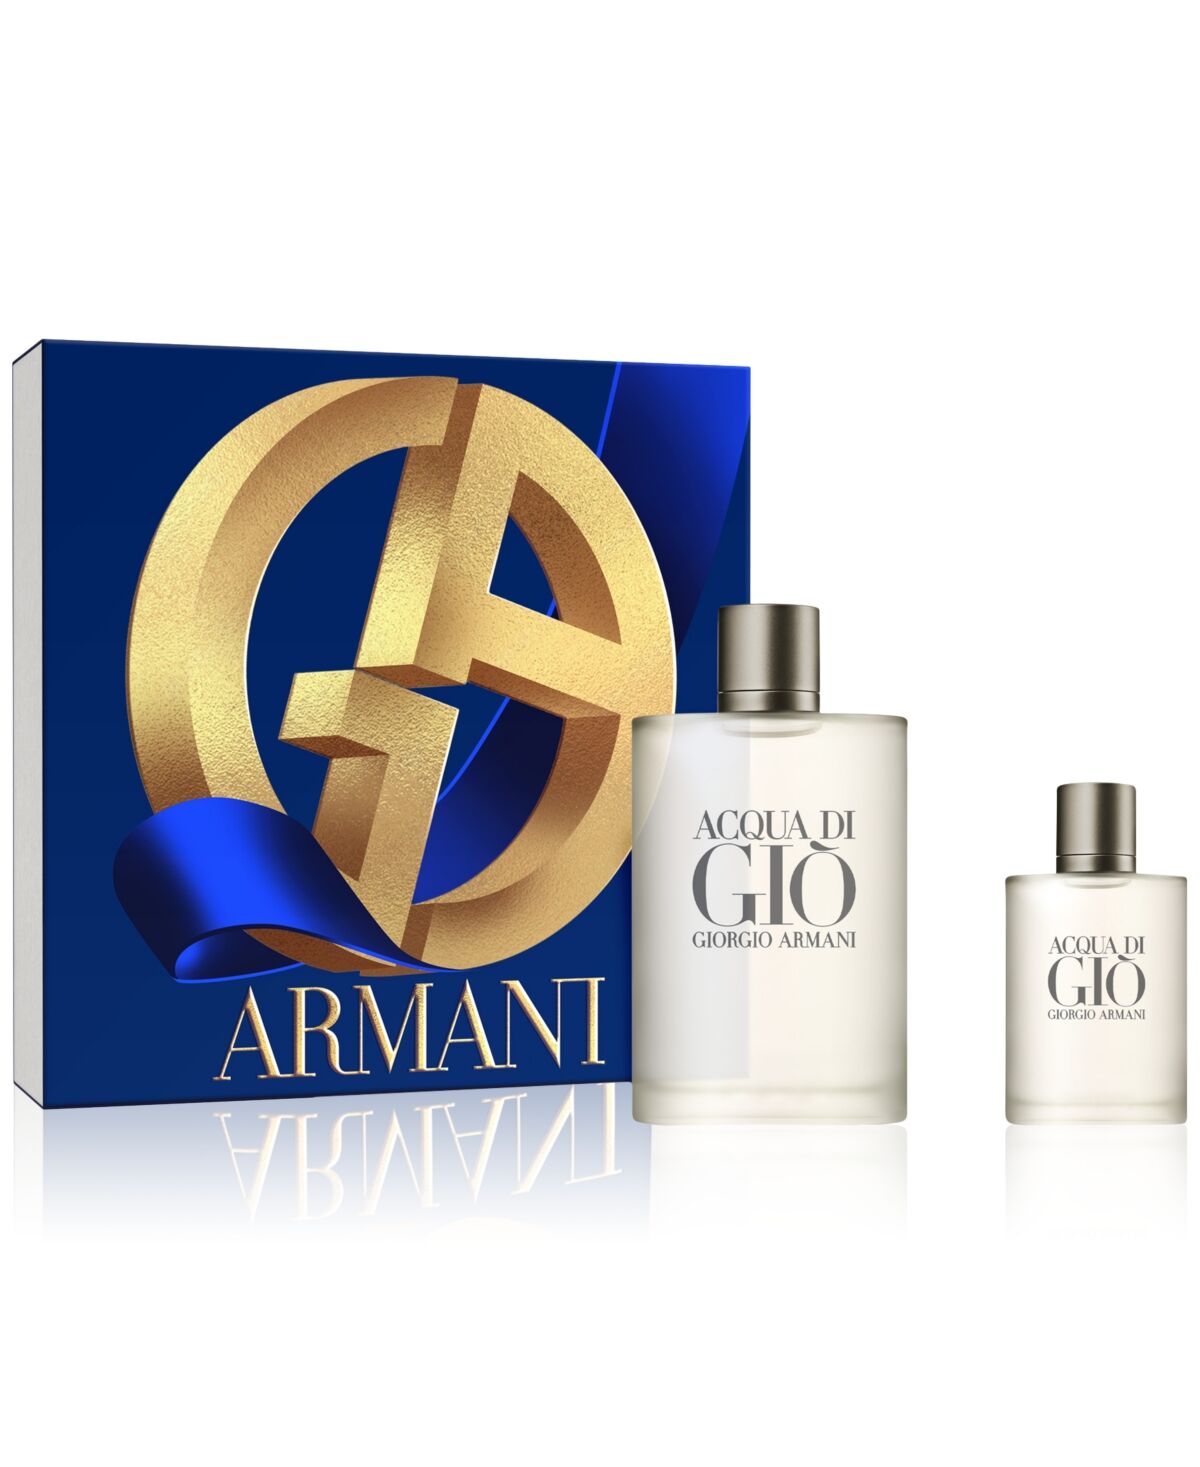 Giorgio Armani Armani Beauty Men's 2-Pc. Acqua di Gio Eau de Toilette Gift Set, Created for Macy's